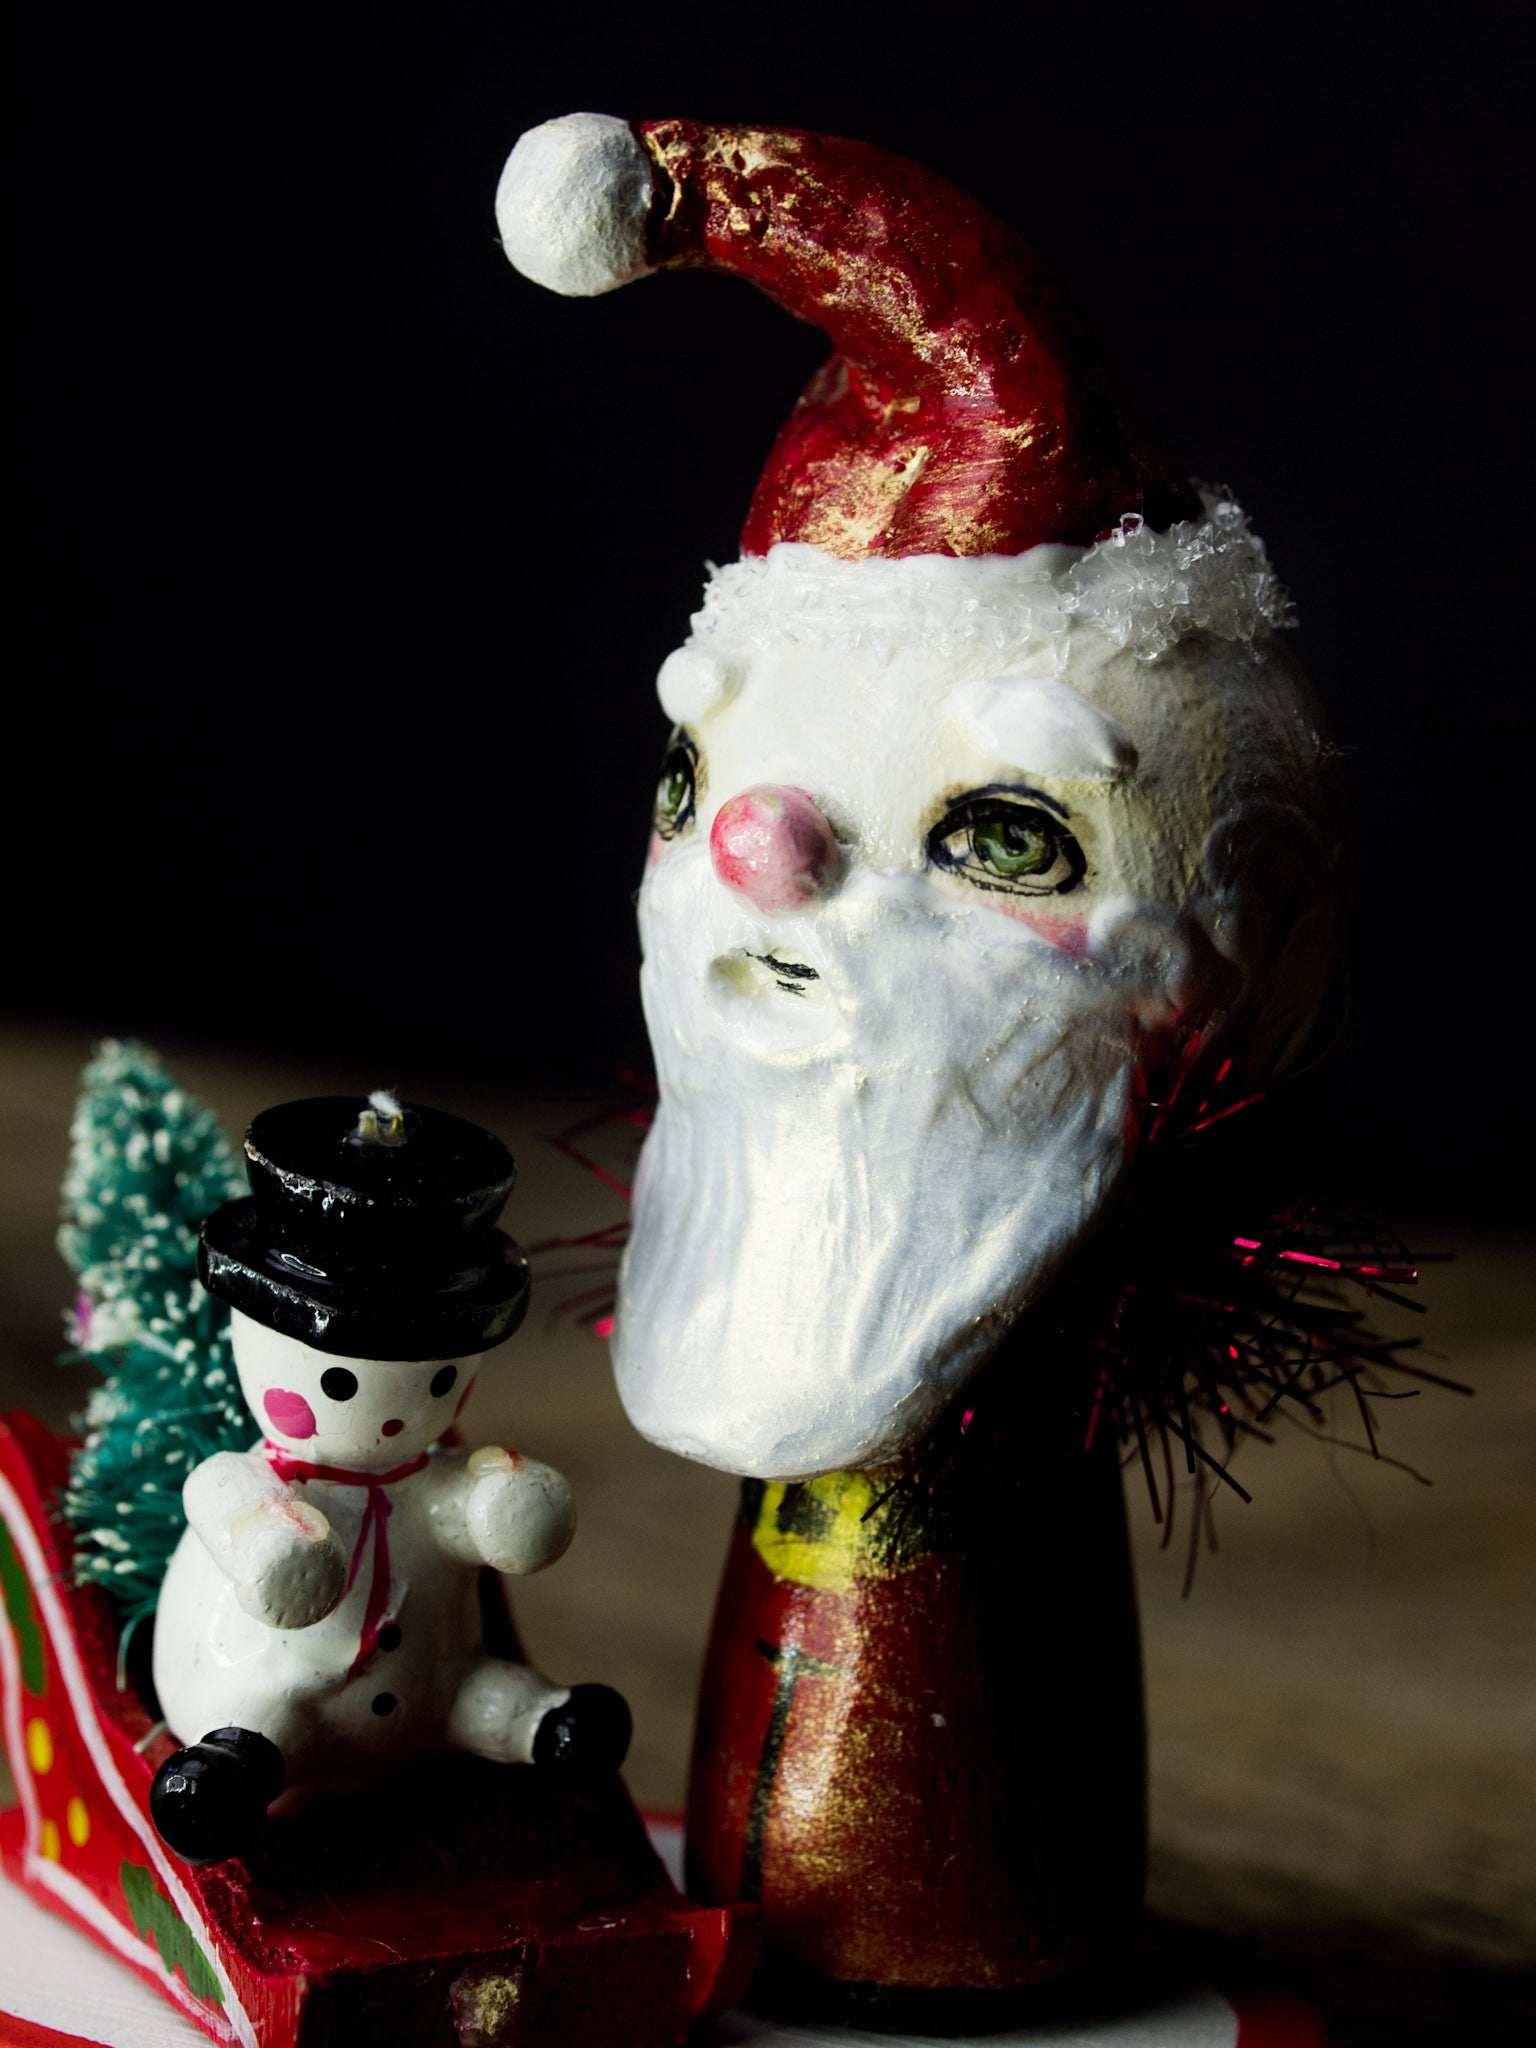 Santa in his magic sled, a holiday wood kokeshi art doll created by Danita Art